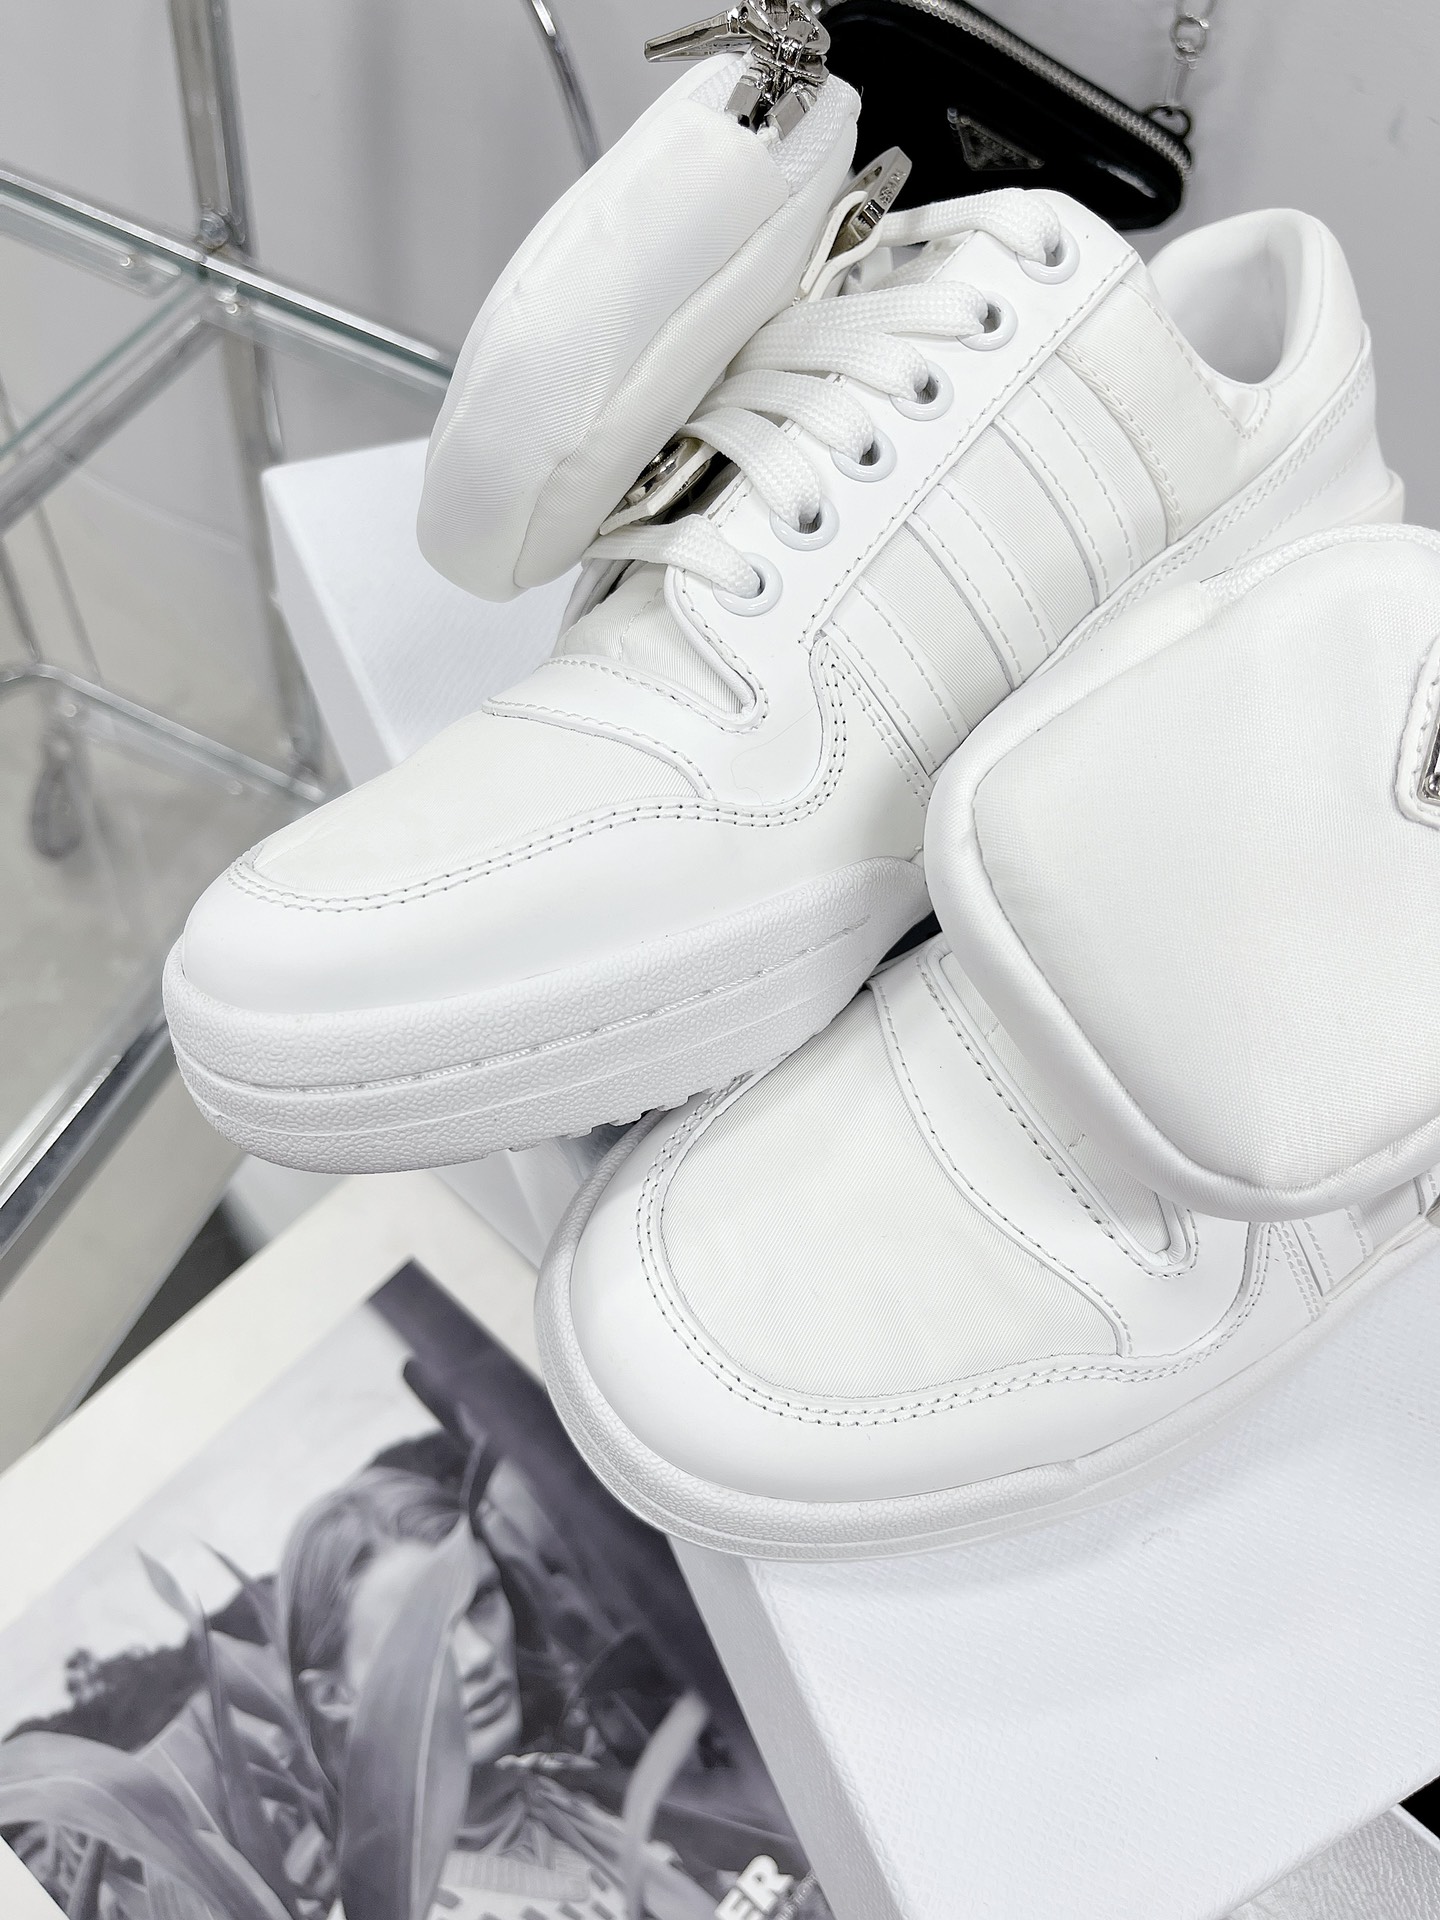 PRADA X Adidas Sneakers with white